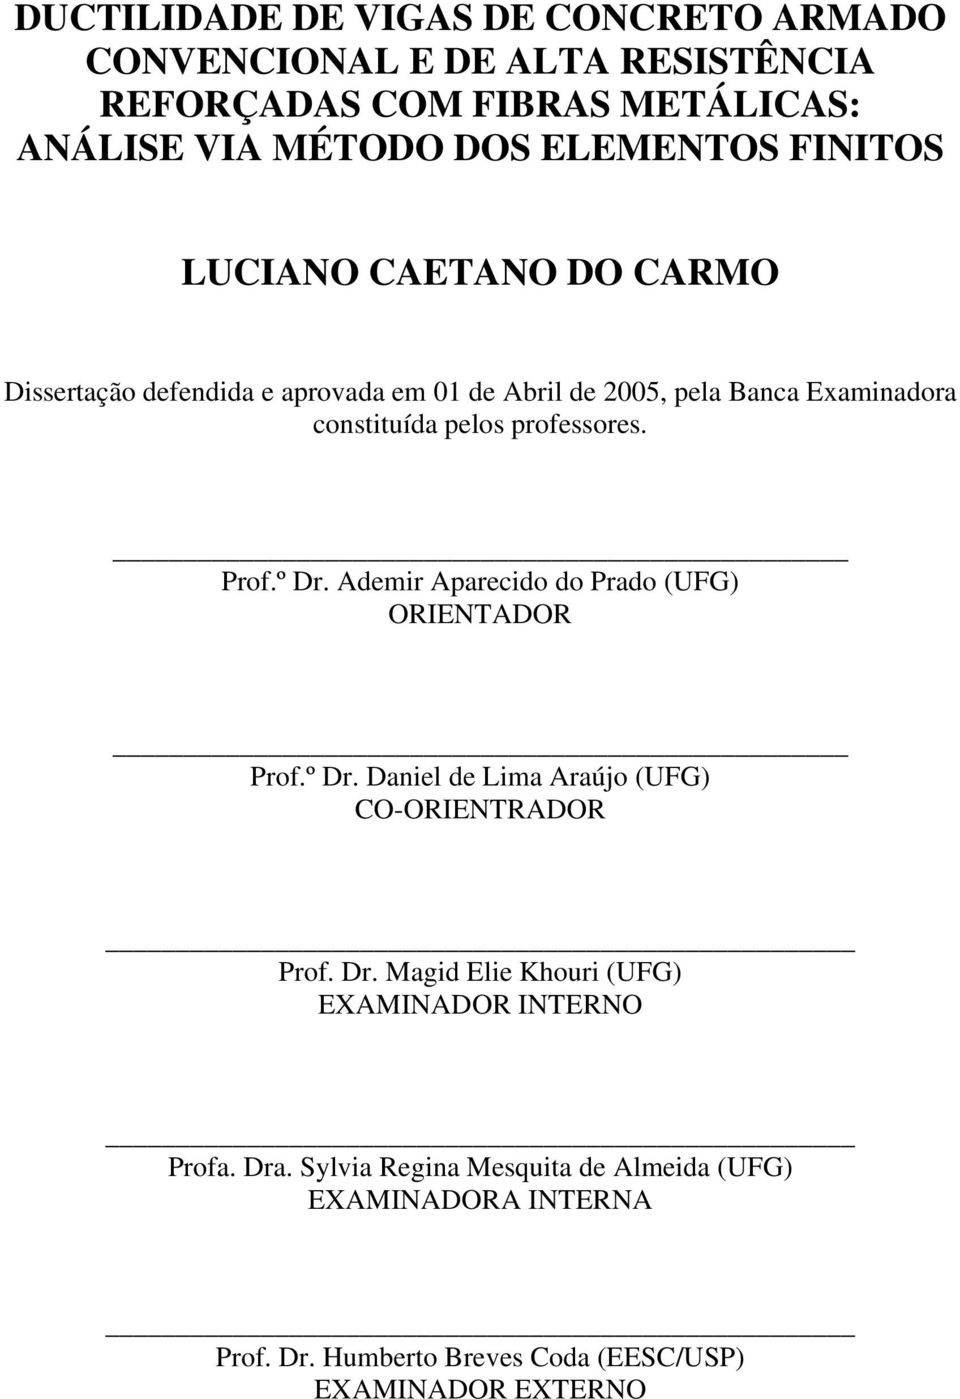 Pro.º Dr. Ademir Apareido do Prado (UFG) ORIENTADOR Pro.º Dr. Daniel de Lima Araújo (UFG) CO-ORIENTRADOR Pro. Dr. Magid Elie Khouri (UFG) EXAMINADOR INTERNO Proa.